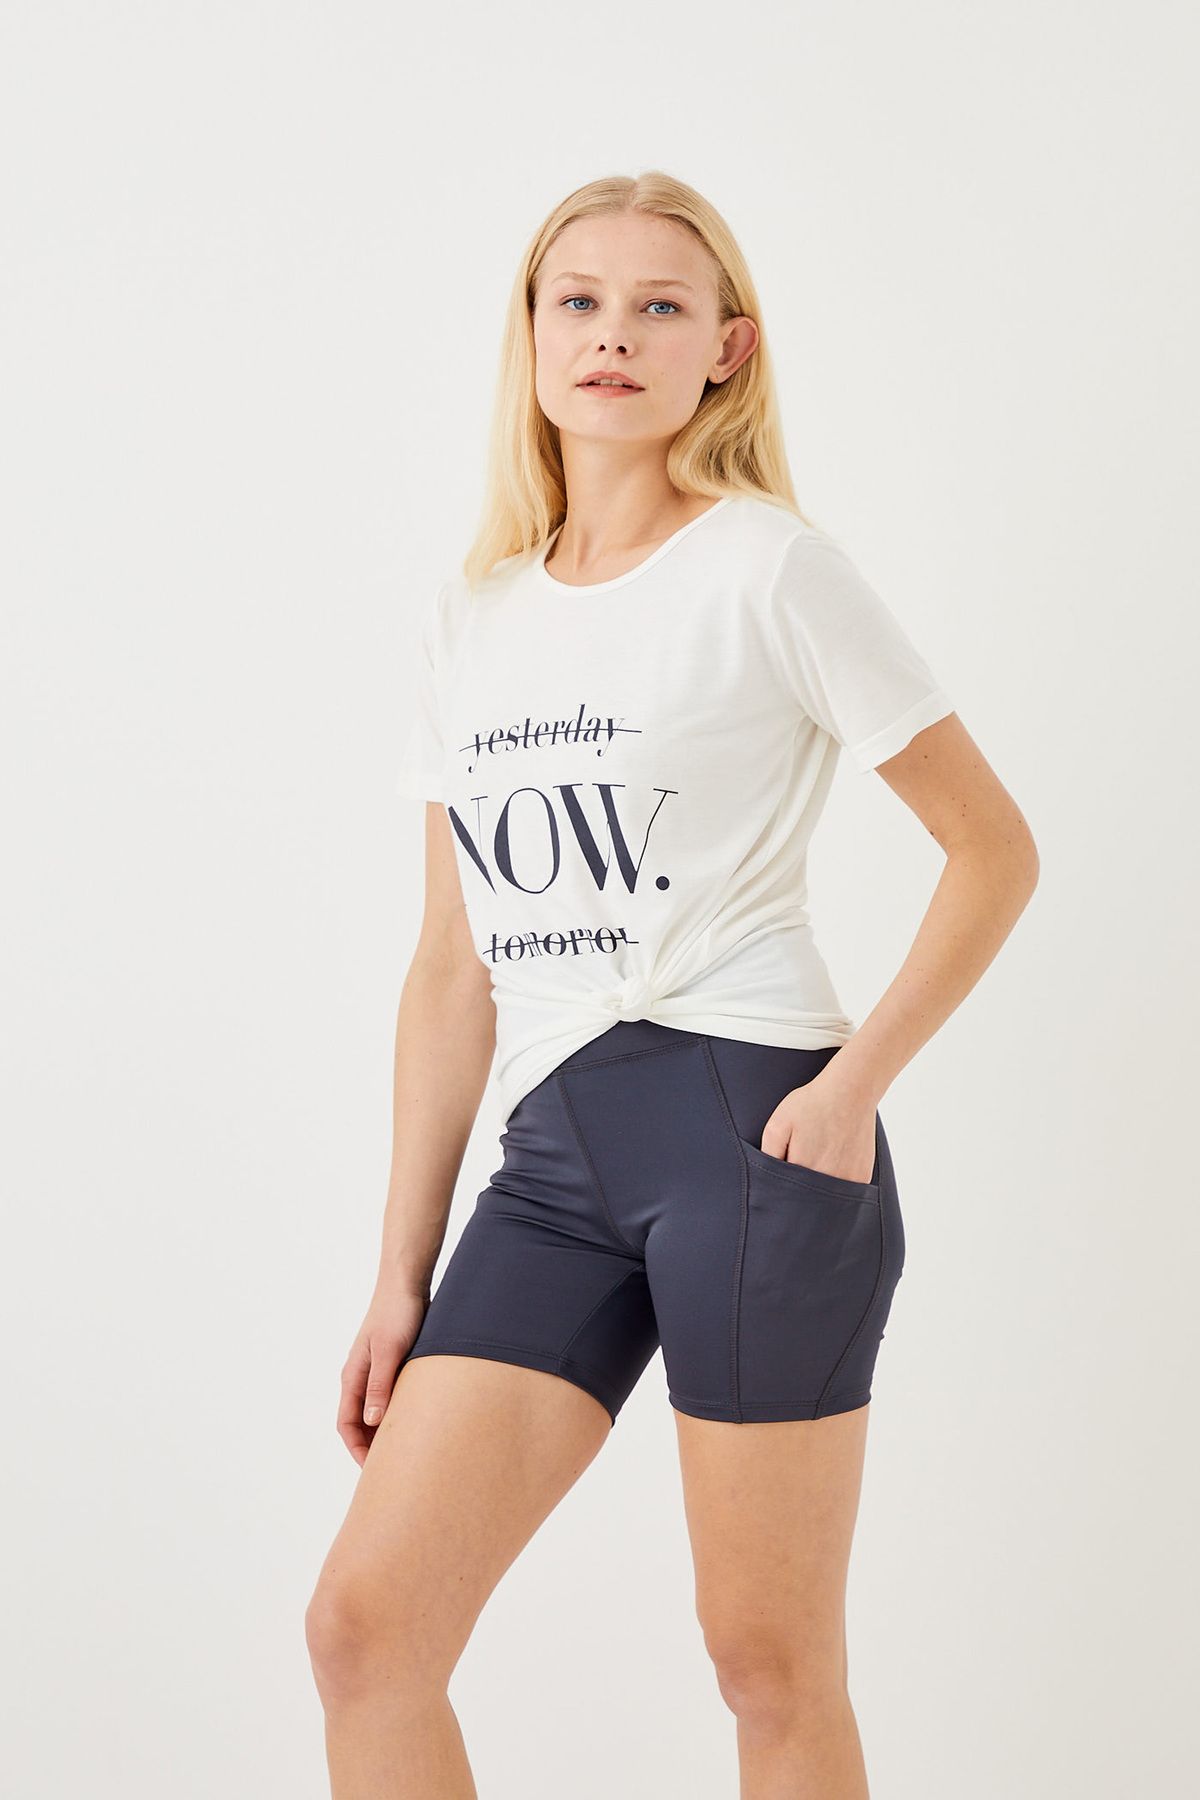 ENNA MODA Cepli Dikişsiz (seamless) Activewear Cepli Sport Şort Ve Yoga & Pilates Kombin Slogan T-shirt Seti